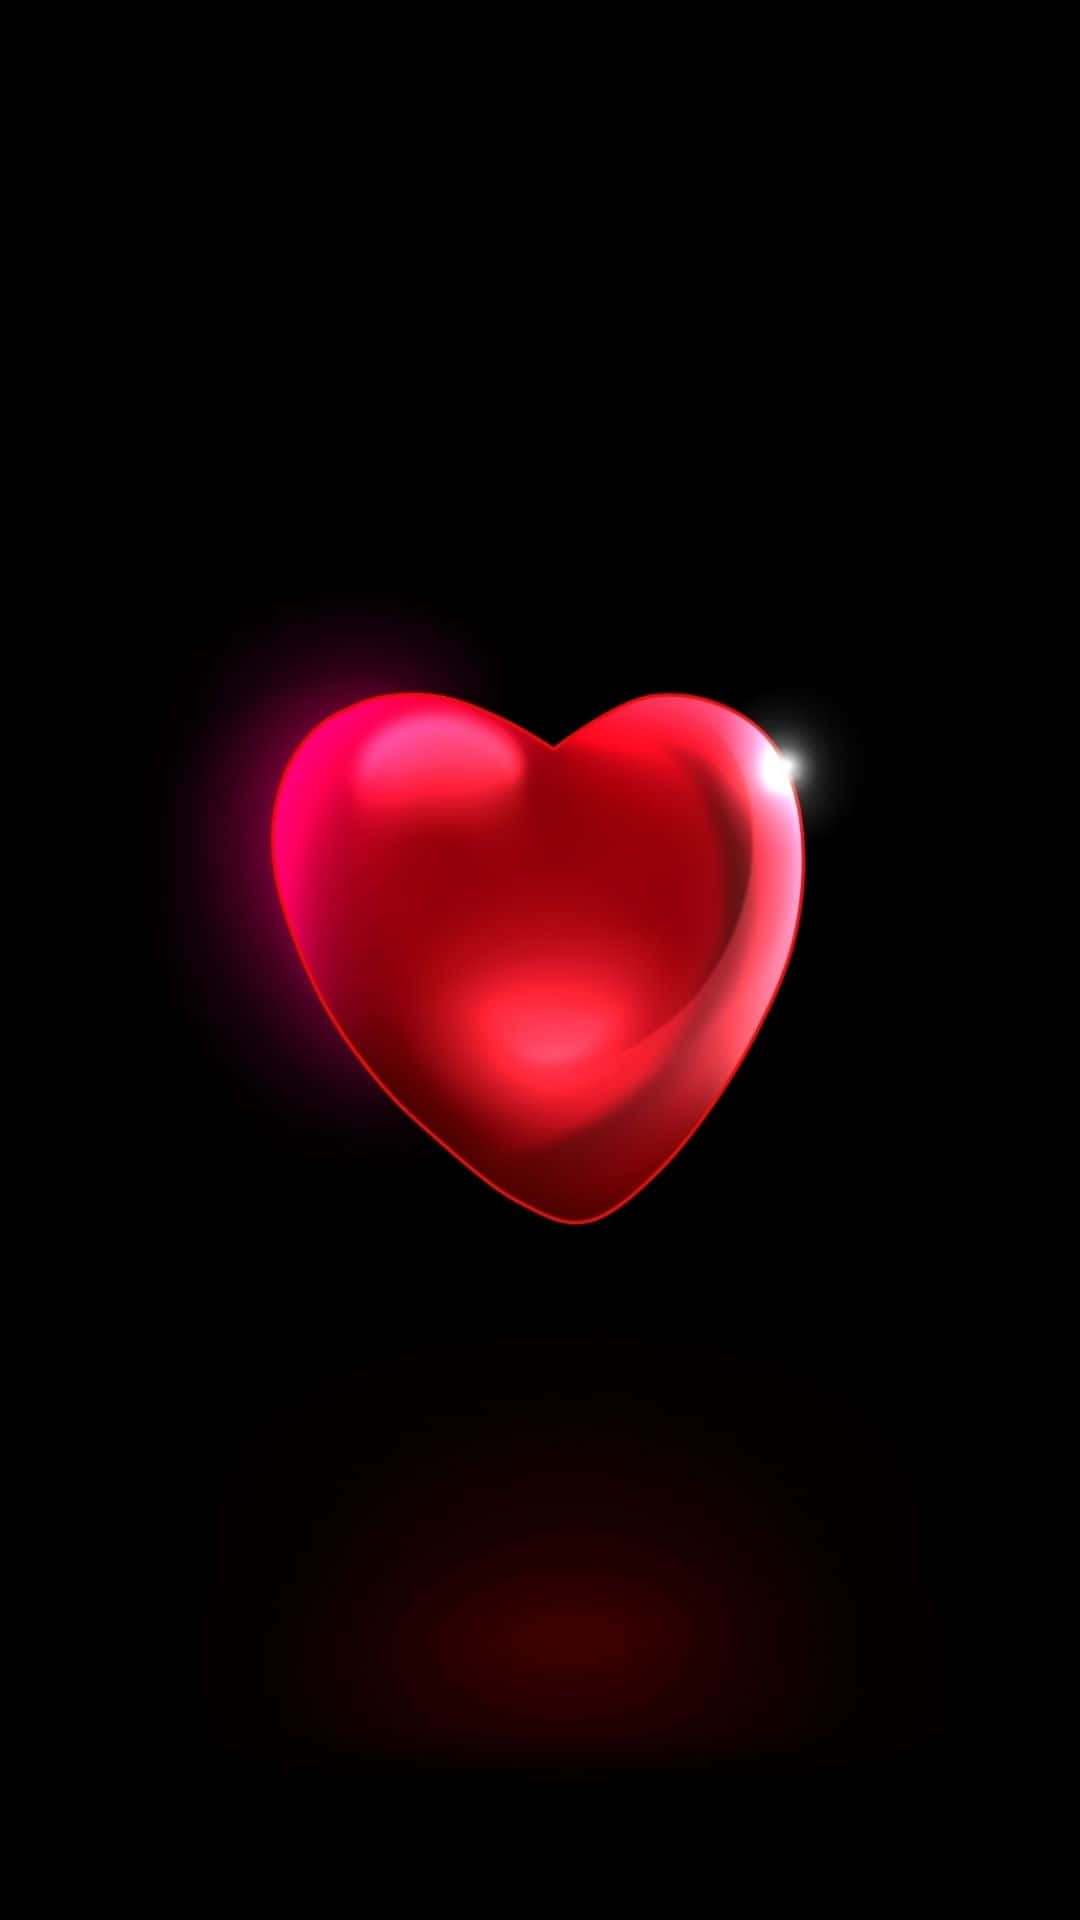 Zeigedeine Liebe Mit Einem Wunderschönen Roten Herz! Wallpaper